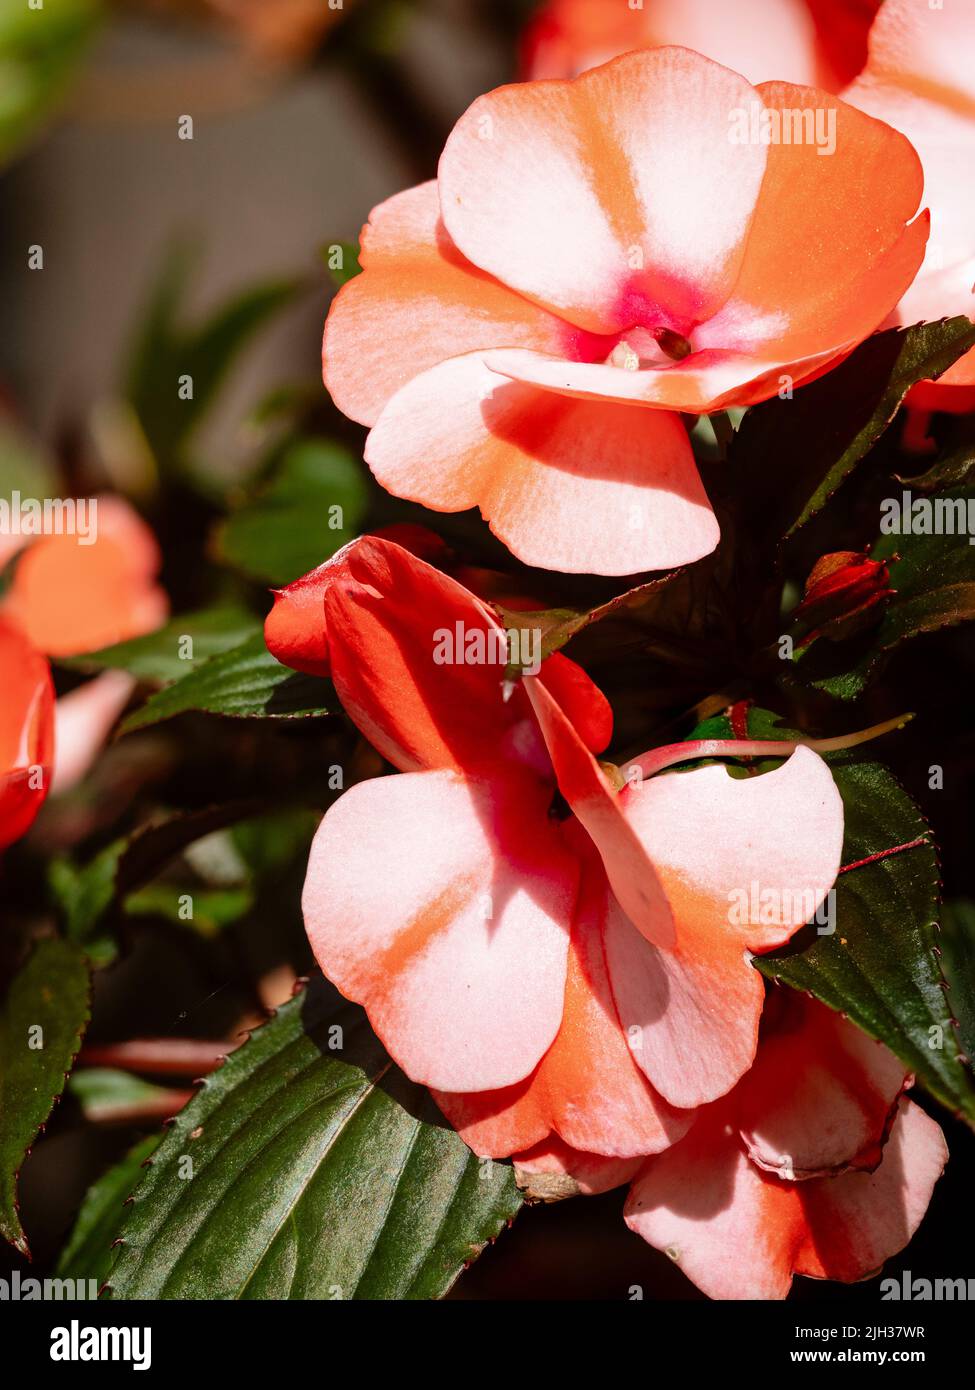 Flores de color rosa pálido y rojo de la tierna Nueva Guinea Impatiens, Impatiens hawkerii 'Paradise Strawberry bicolor' crecido para el verano fuera de la exhibición Foto de stock